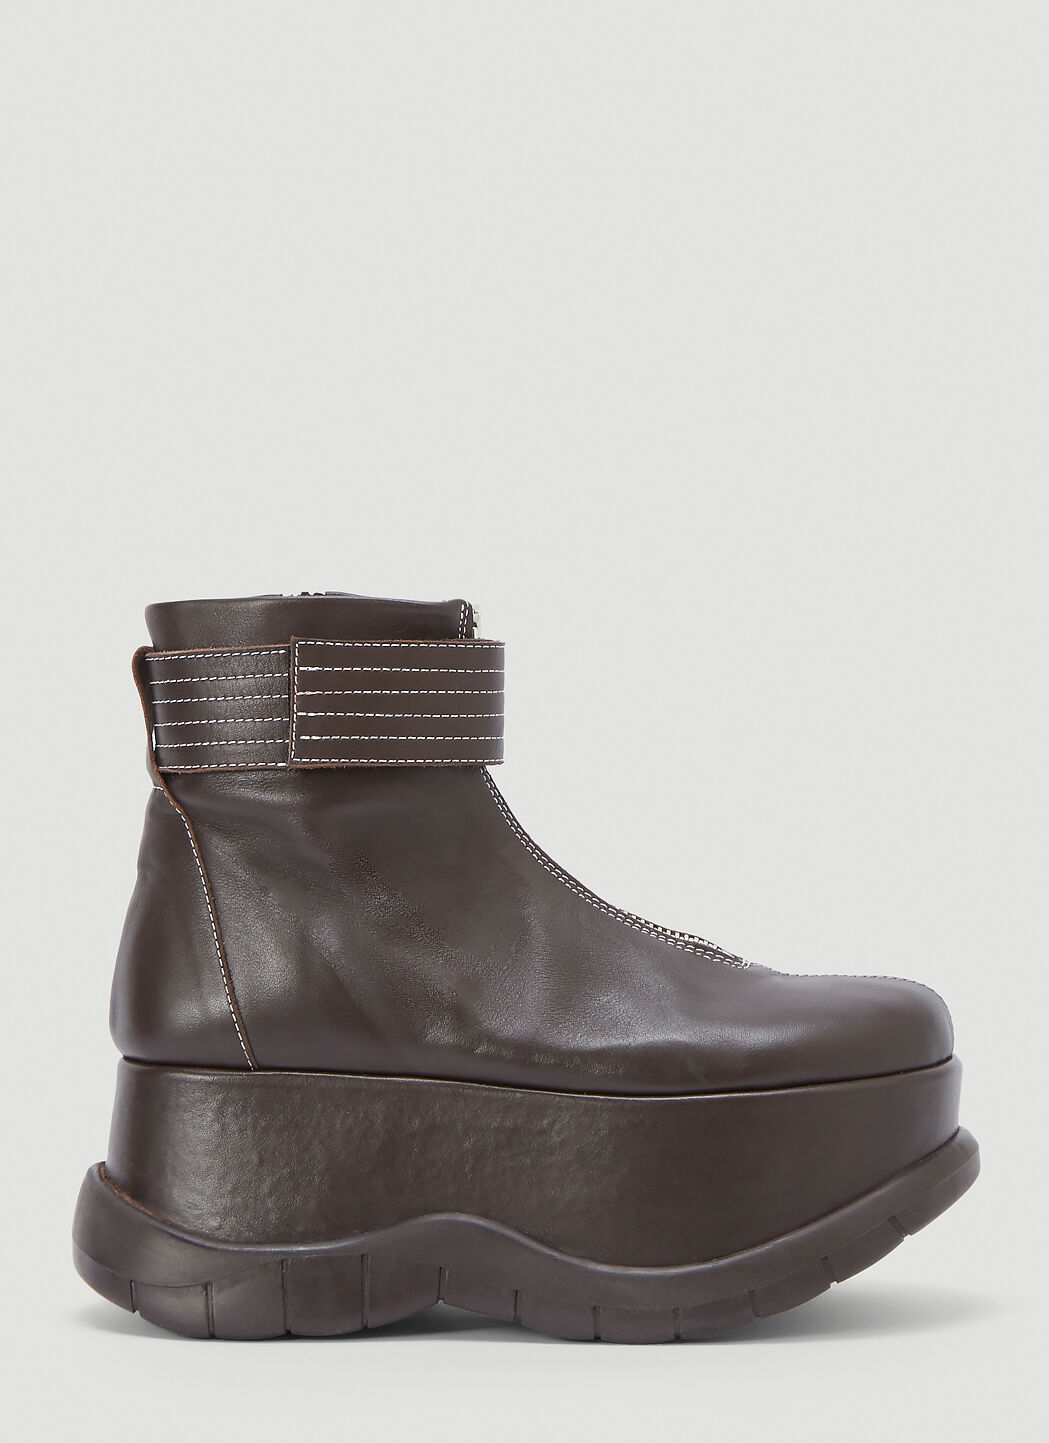 Sunnei Platform Leather Boots 黑 sun0245005